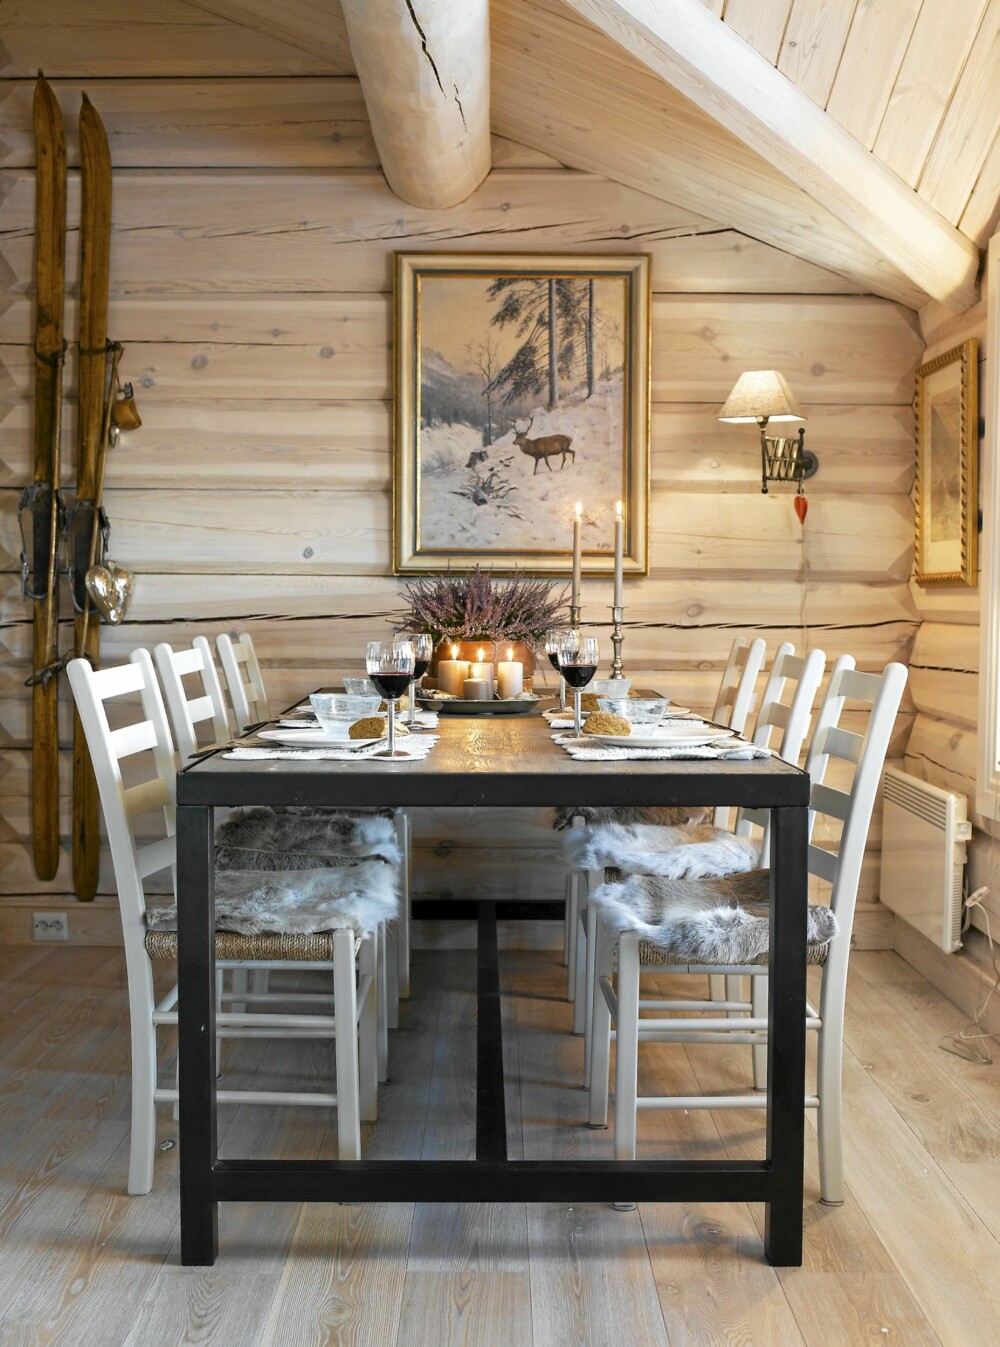 INDUSTRIELLE DETALJER: Spisebordet er rustikt med industrielle detaljer. De enkle Jærstolene gir spiseplassen et luftig uttrykk.